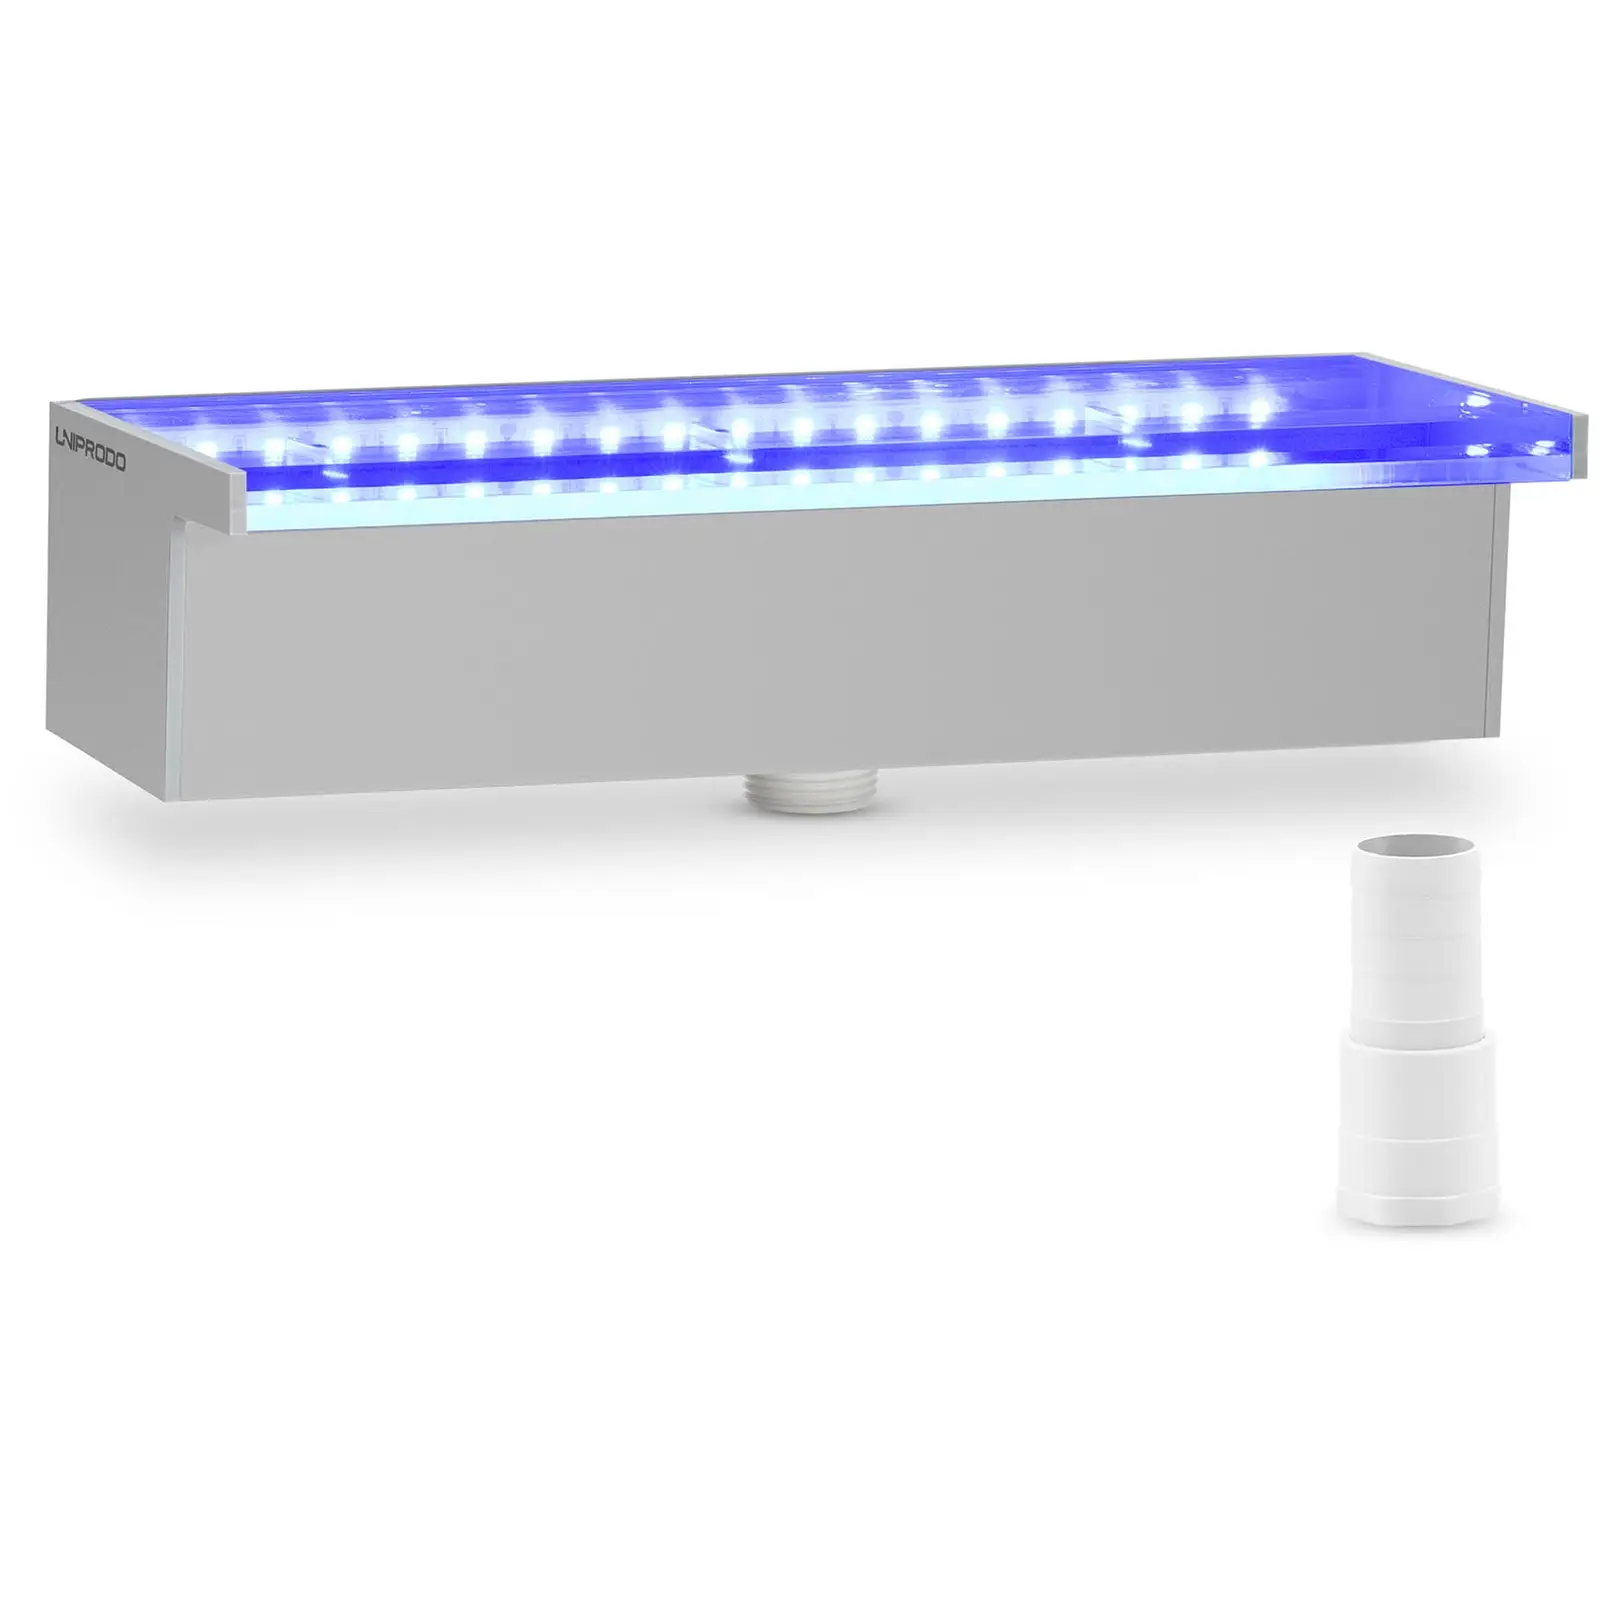 Vattenfall till pool - 30 cm - LED-belysning - Blå / vit -  Djupt vattenutlopp